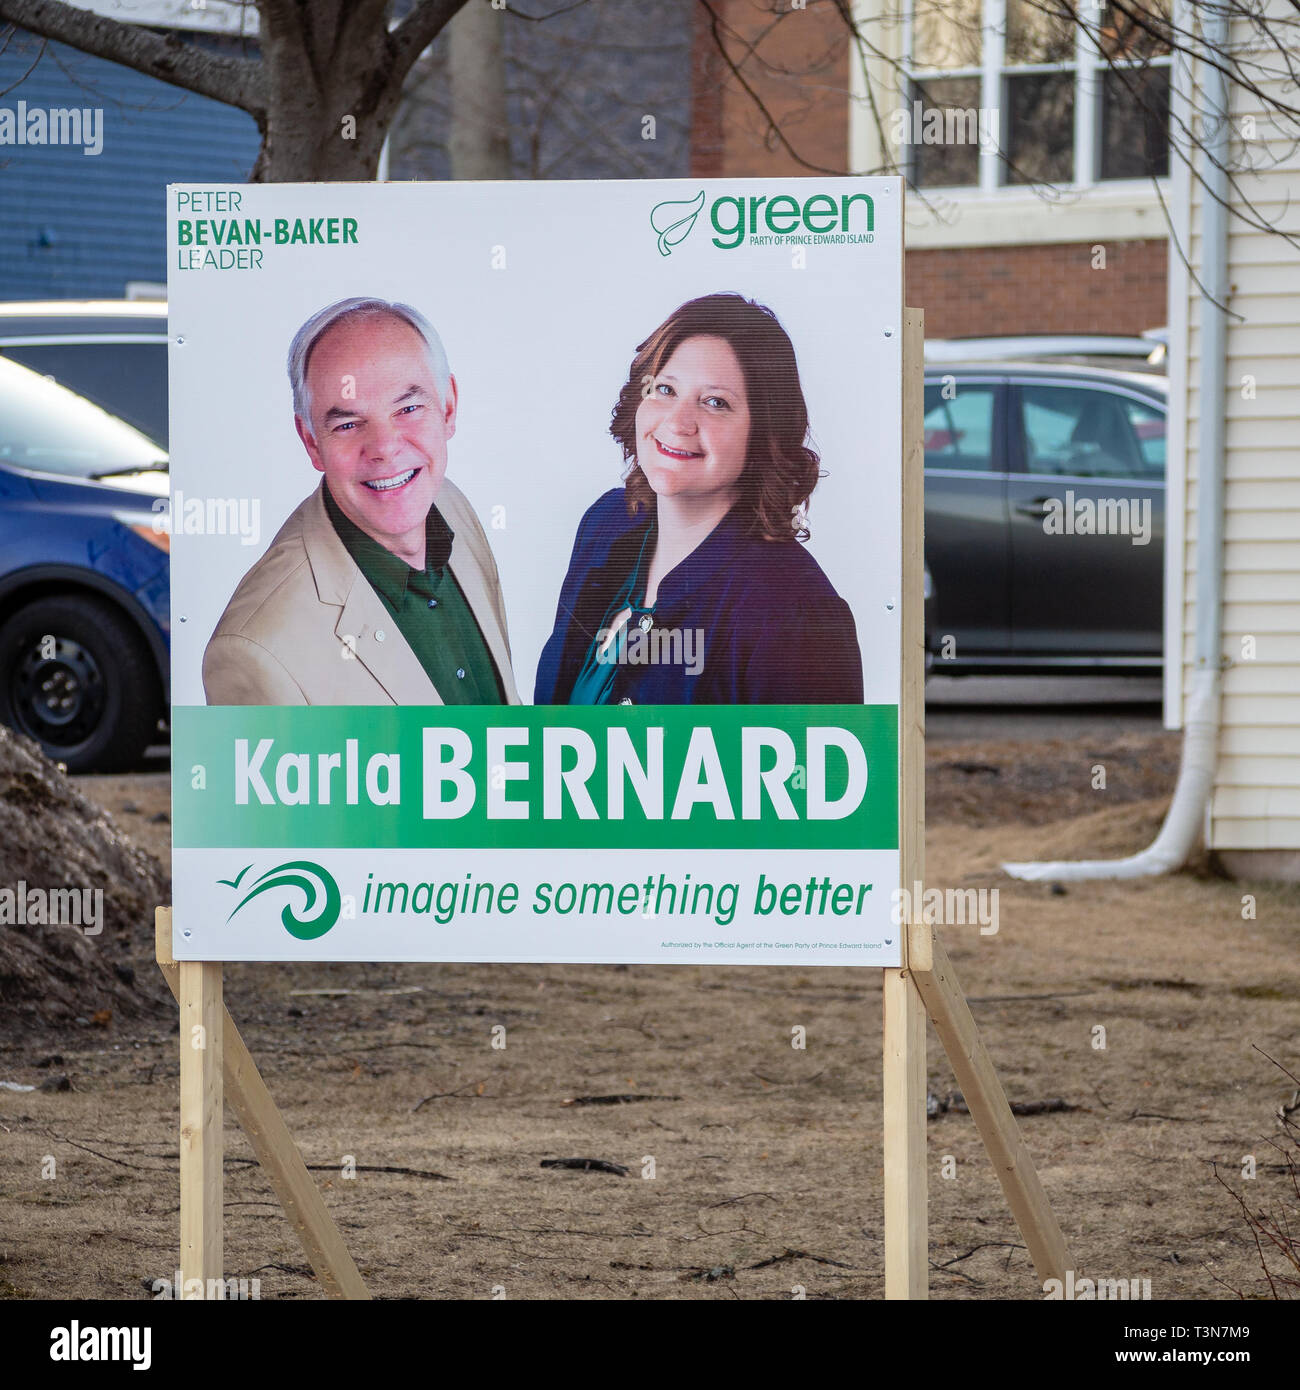 Charlottetown, Prince Edward Island, Kanada: Beschilderung von Peter Bevan-Baker und Karla Bernard von der Grünen Partei von Prince Edward Island Stockfoto